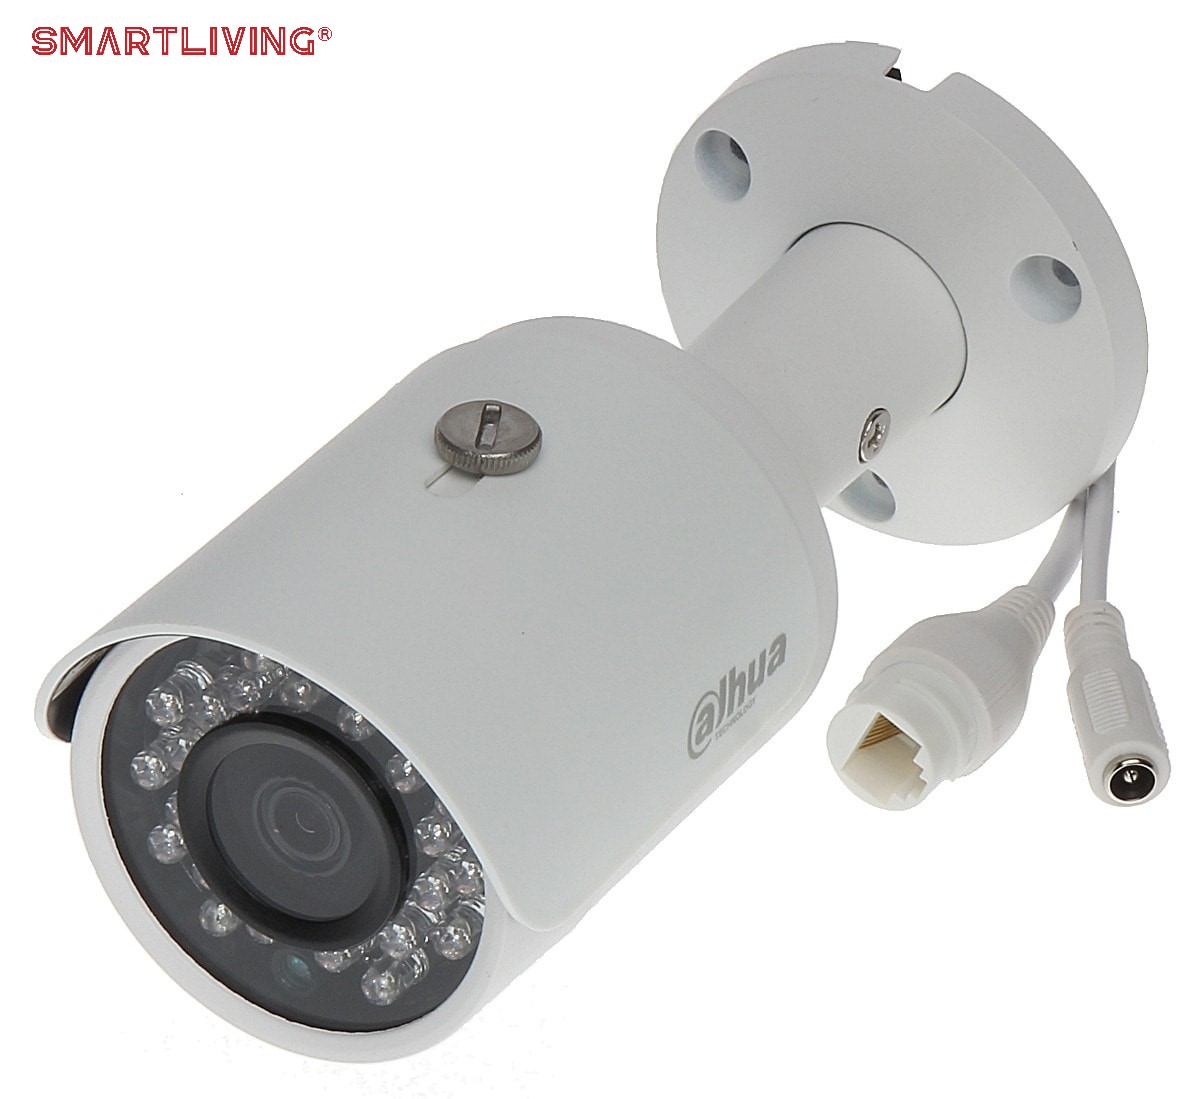 Camera quan sát có dây được sử dụng rộng rãi trong các siêu thị, trung tâm thương mại, bệnh viện, cơ quan, hay gia đình.